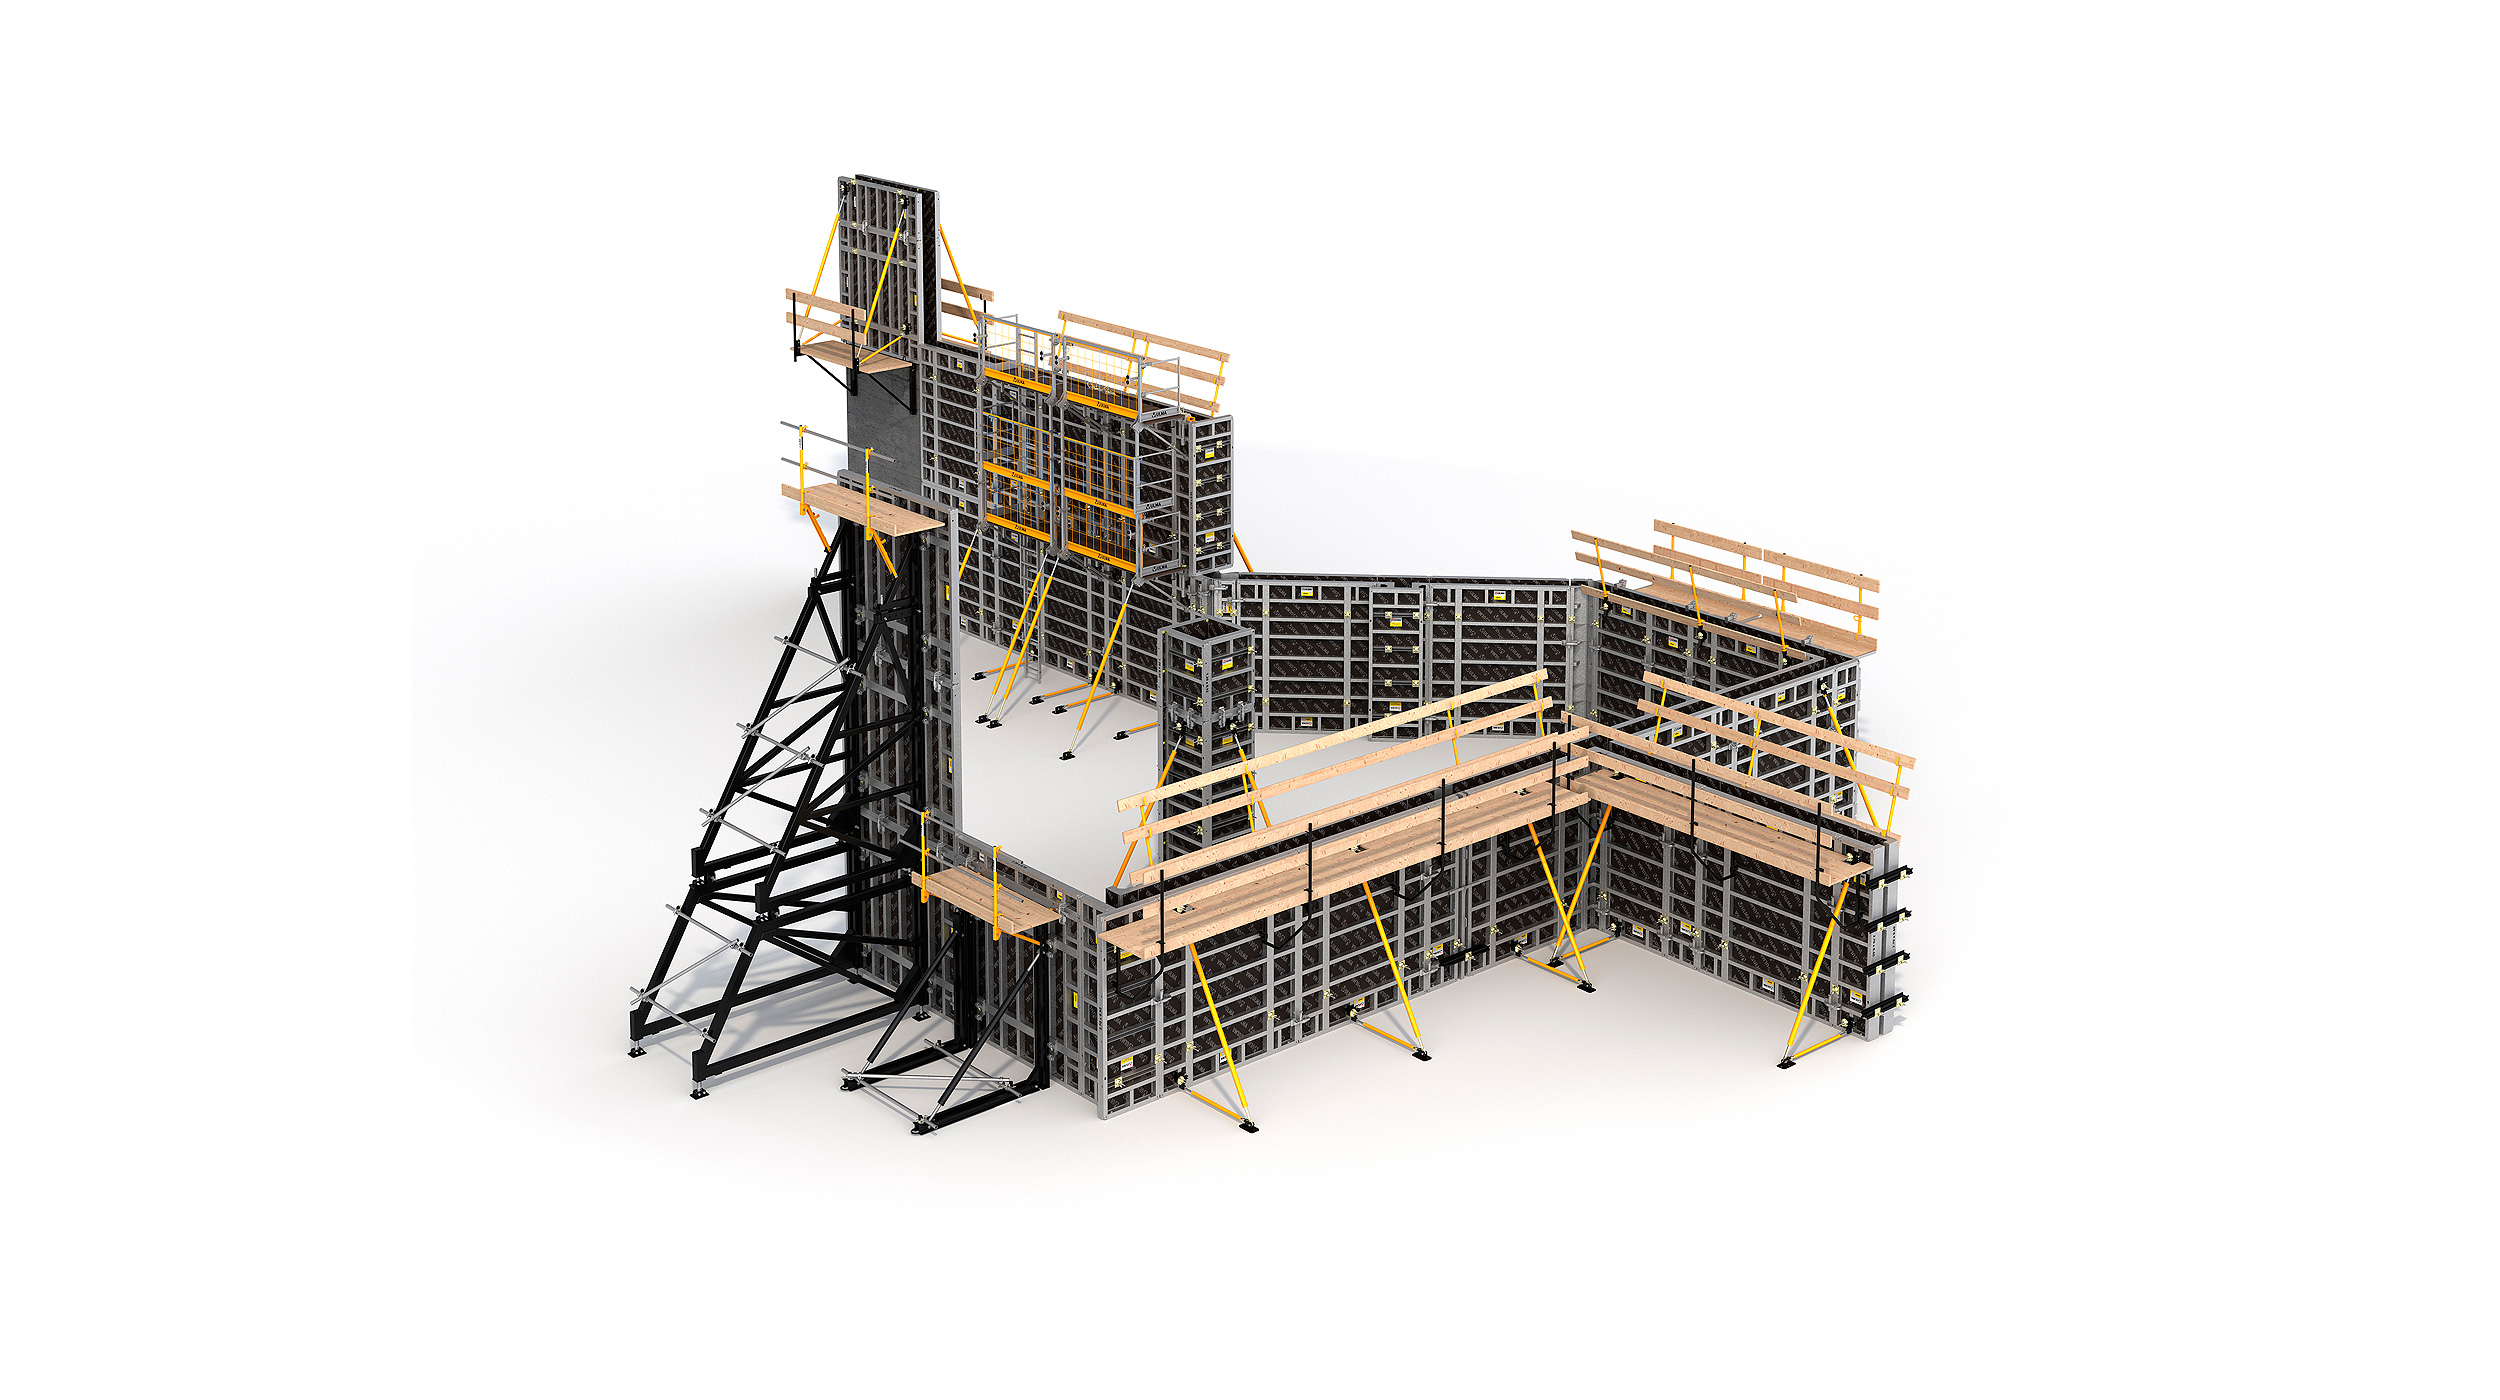 Sistema de cofragem modular e qualquer outro tipo de construção de estruturas verticais de betão. Proporciona alto rendimento, com baixo custo de mão de obra.